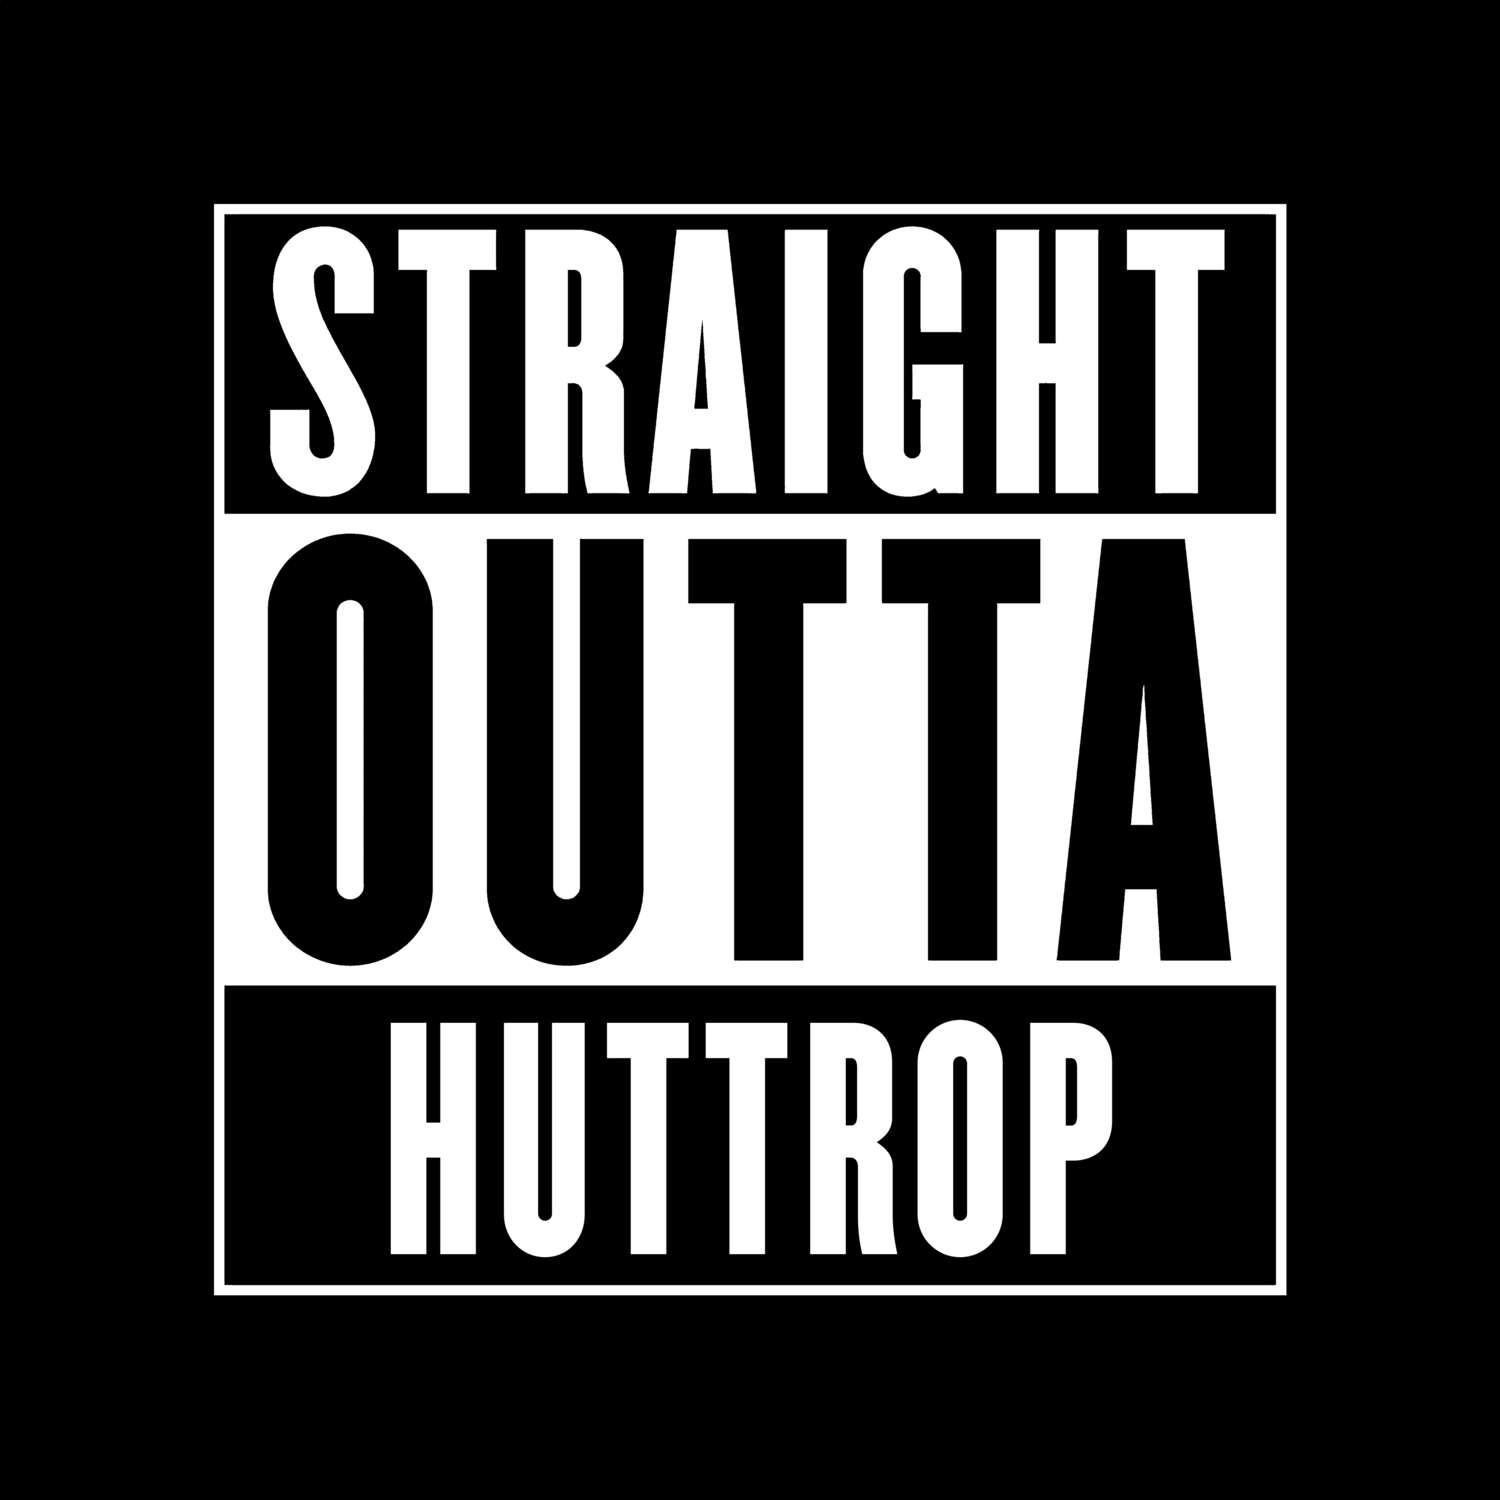 Huttrop T-Shirt »Straight Outta«